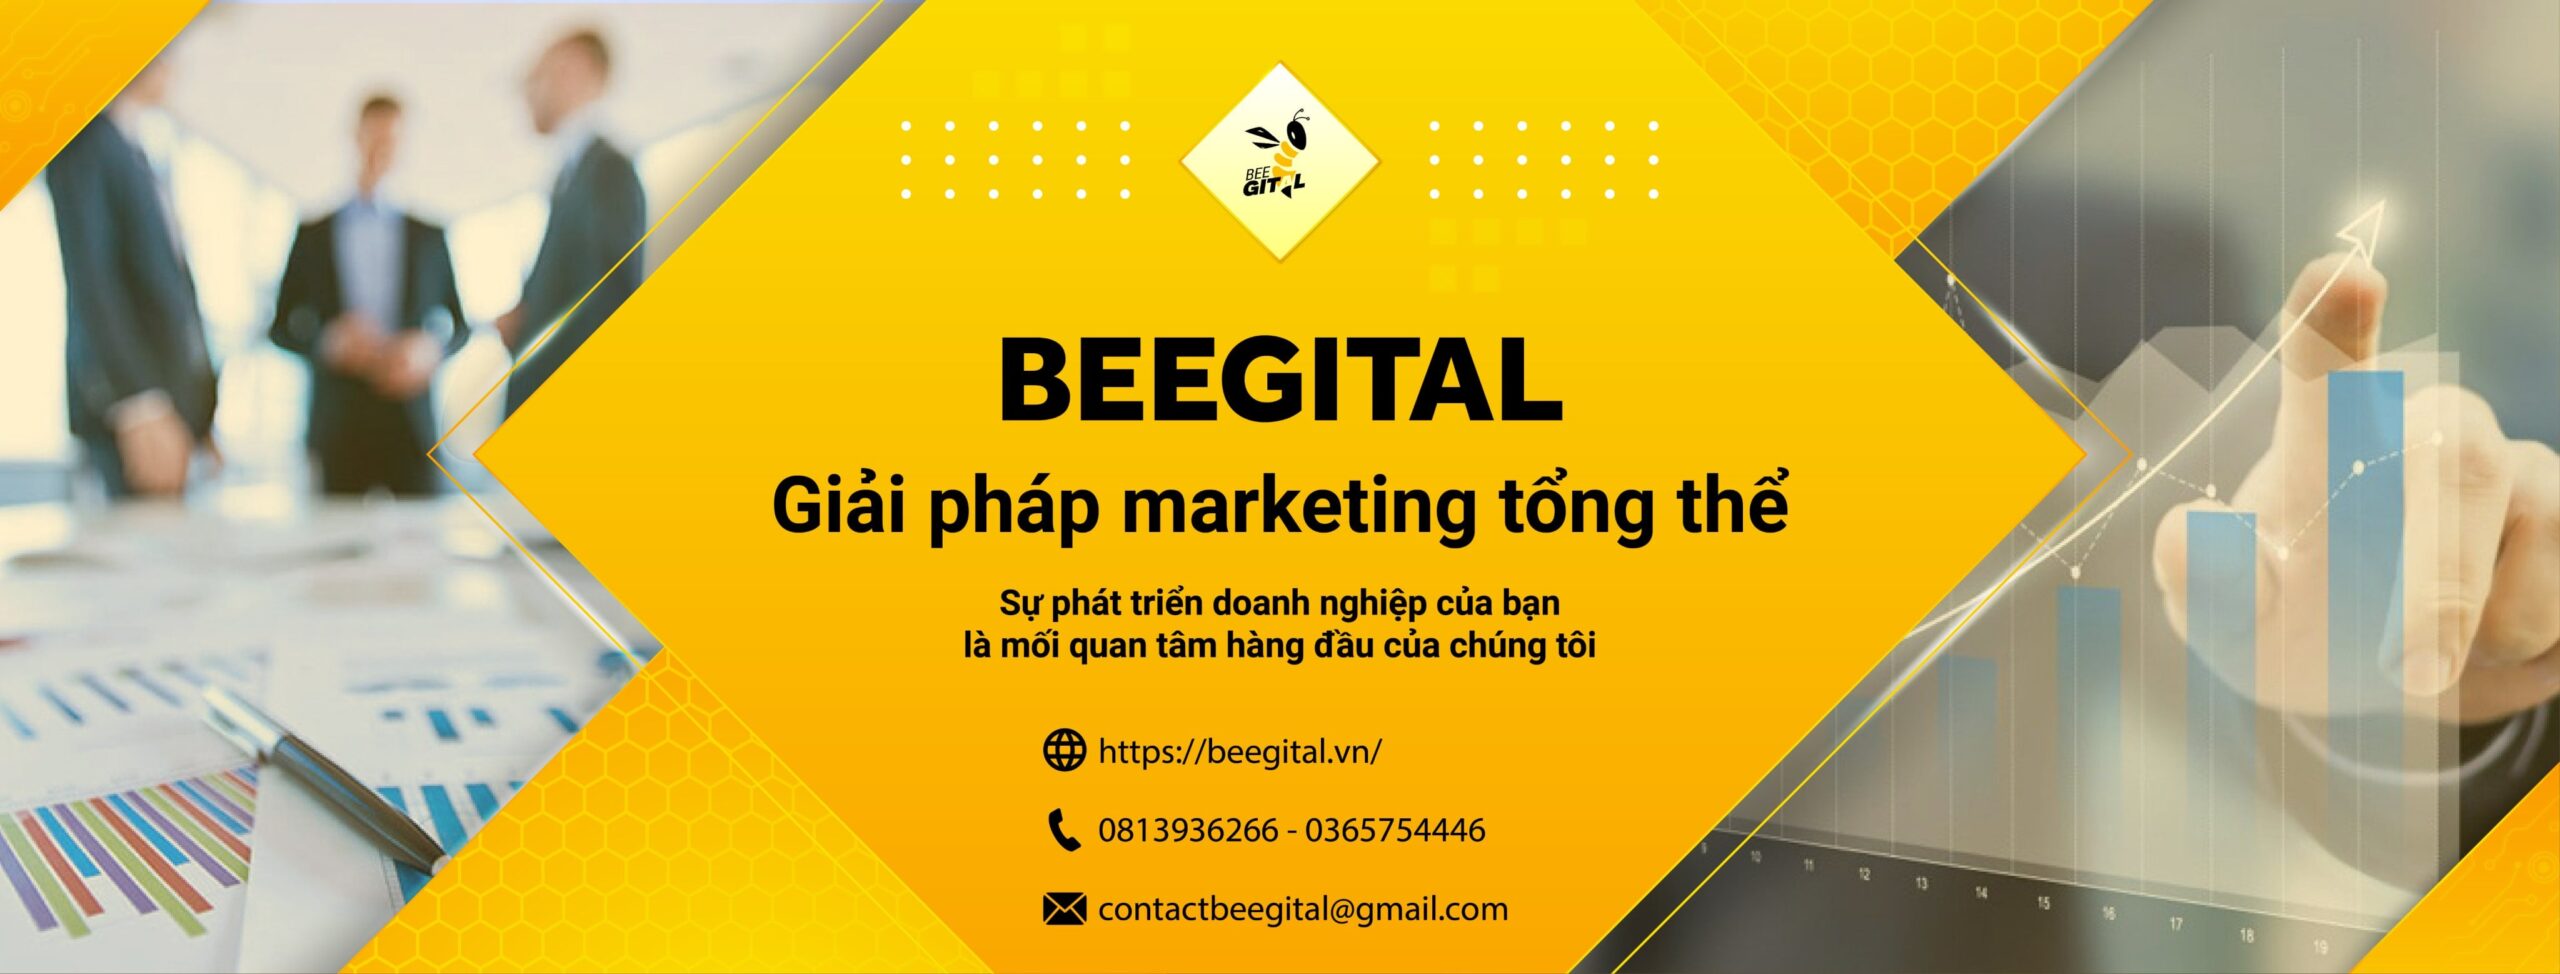 Dịch vụ marketing tổng thể Beegital